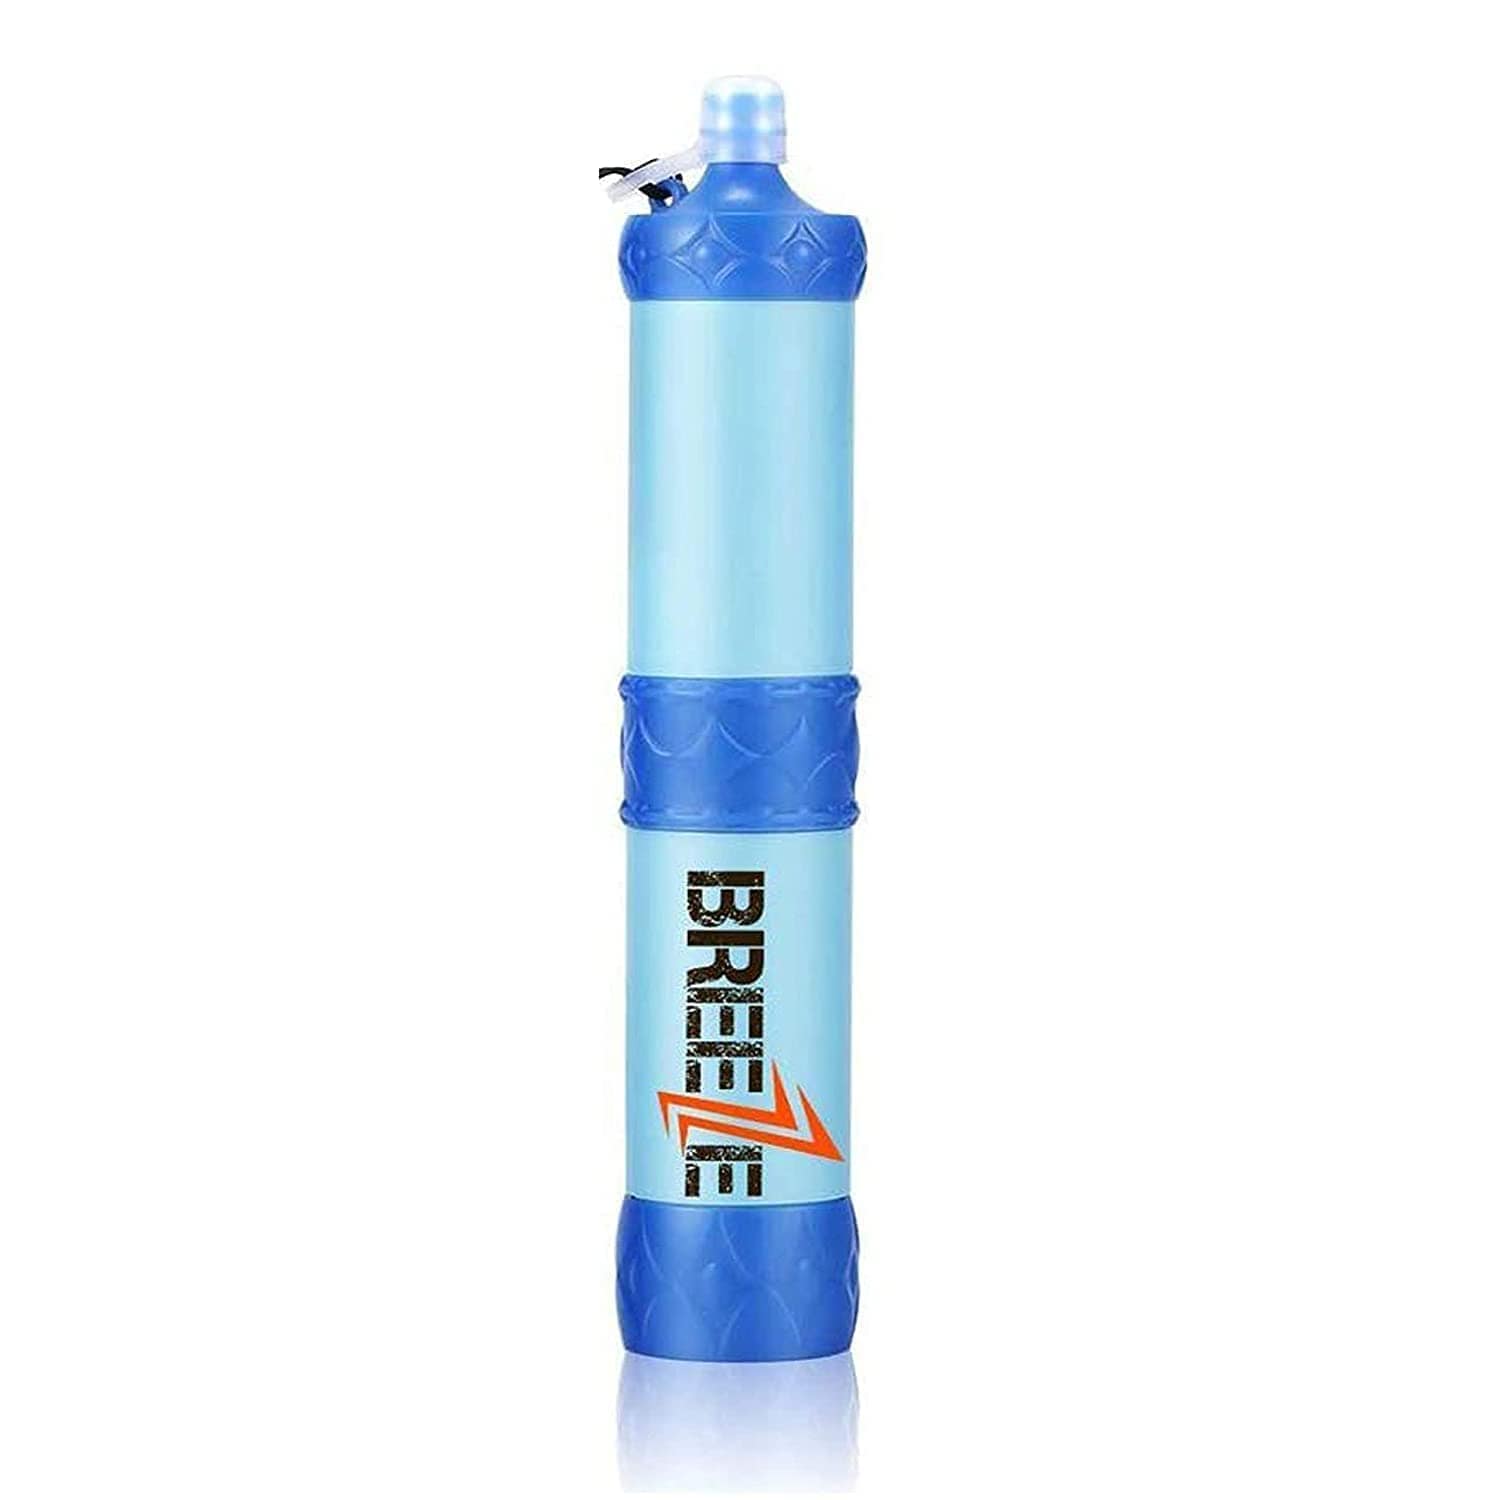 https://www.safecastle.com/cdn/shop/products/breeze-water-filter-combo-of-3-breeze-water-filter-straw-multiple-filtering-options-28641447772242.jpg?v=1642174240